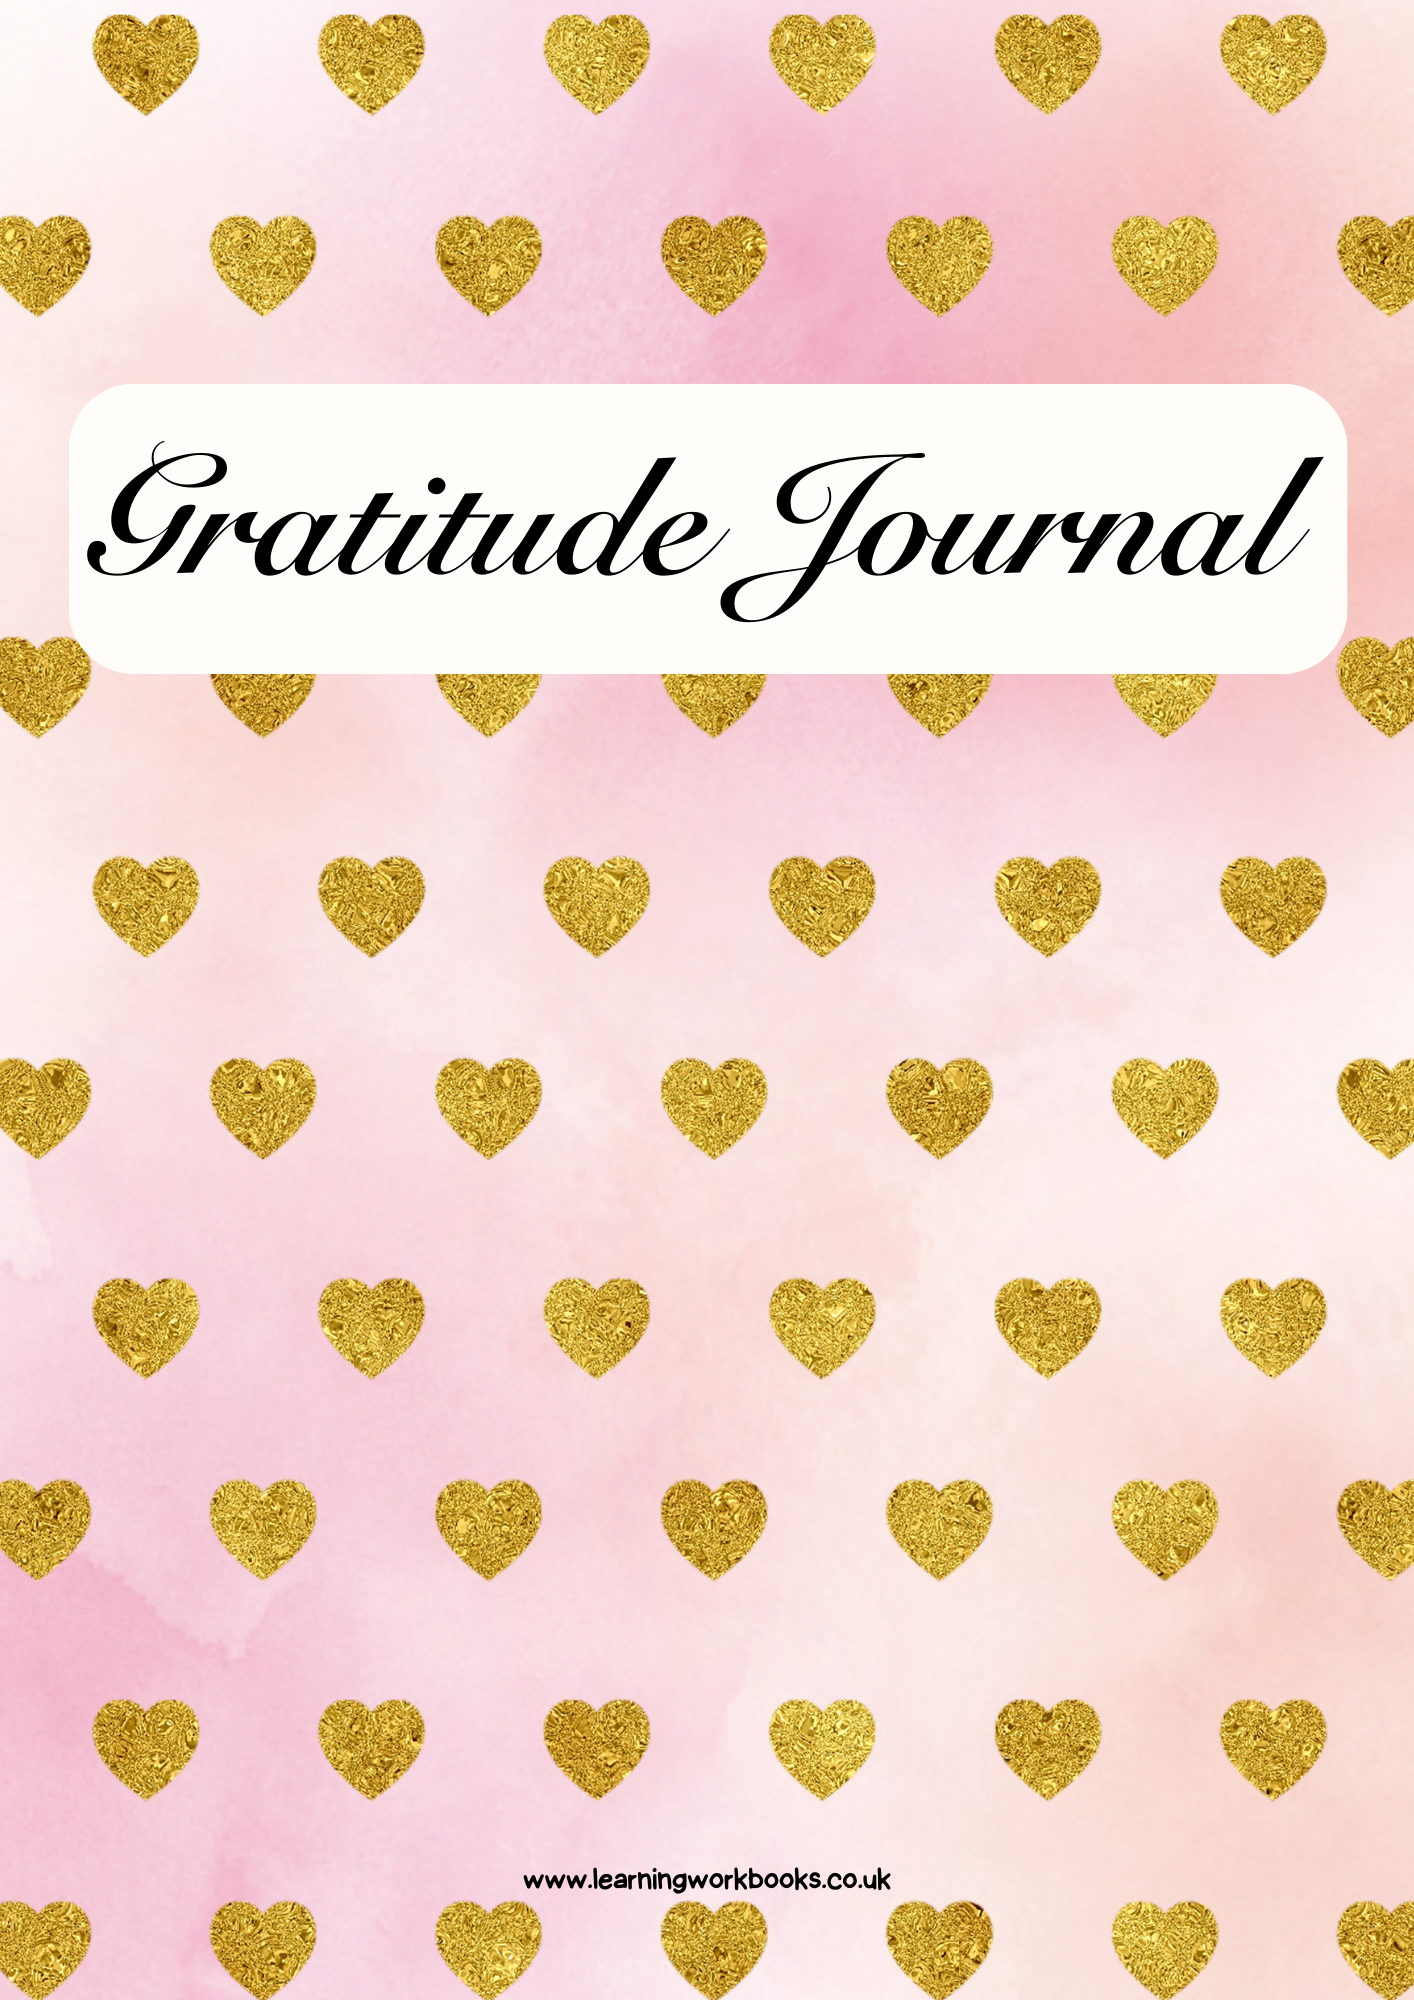 Gold Heart Gratitude Journal 1